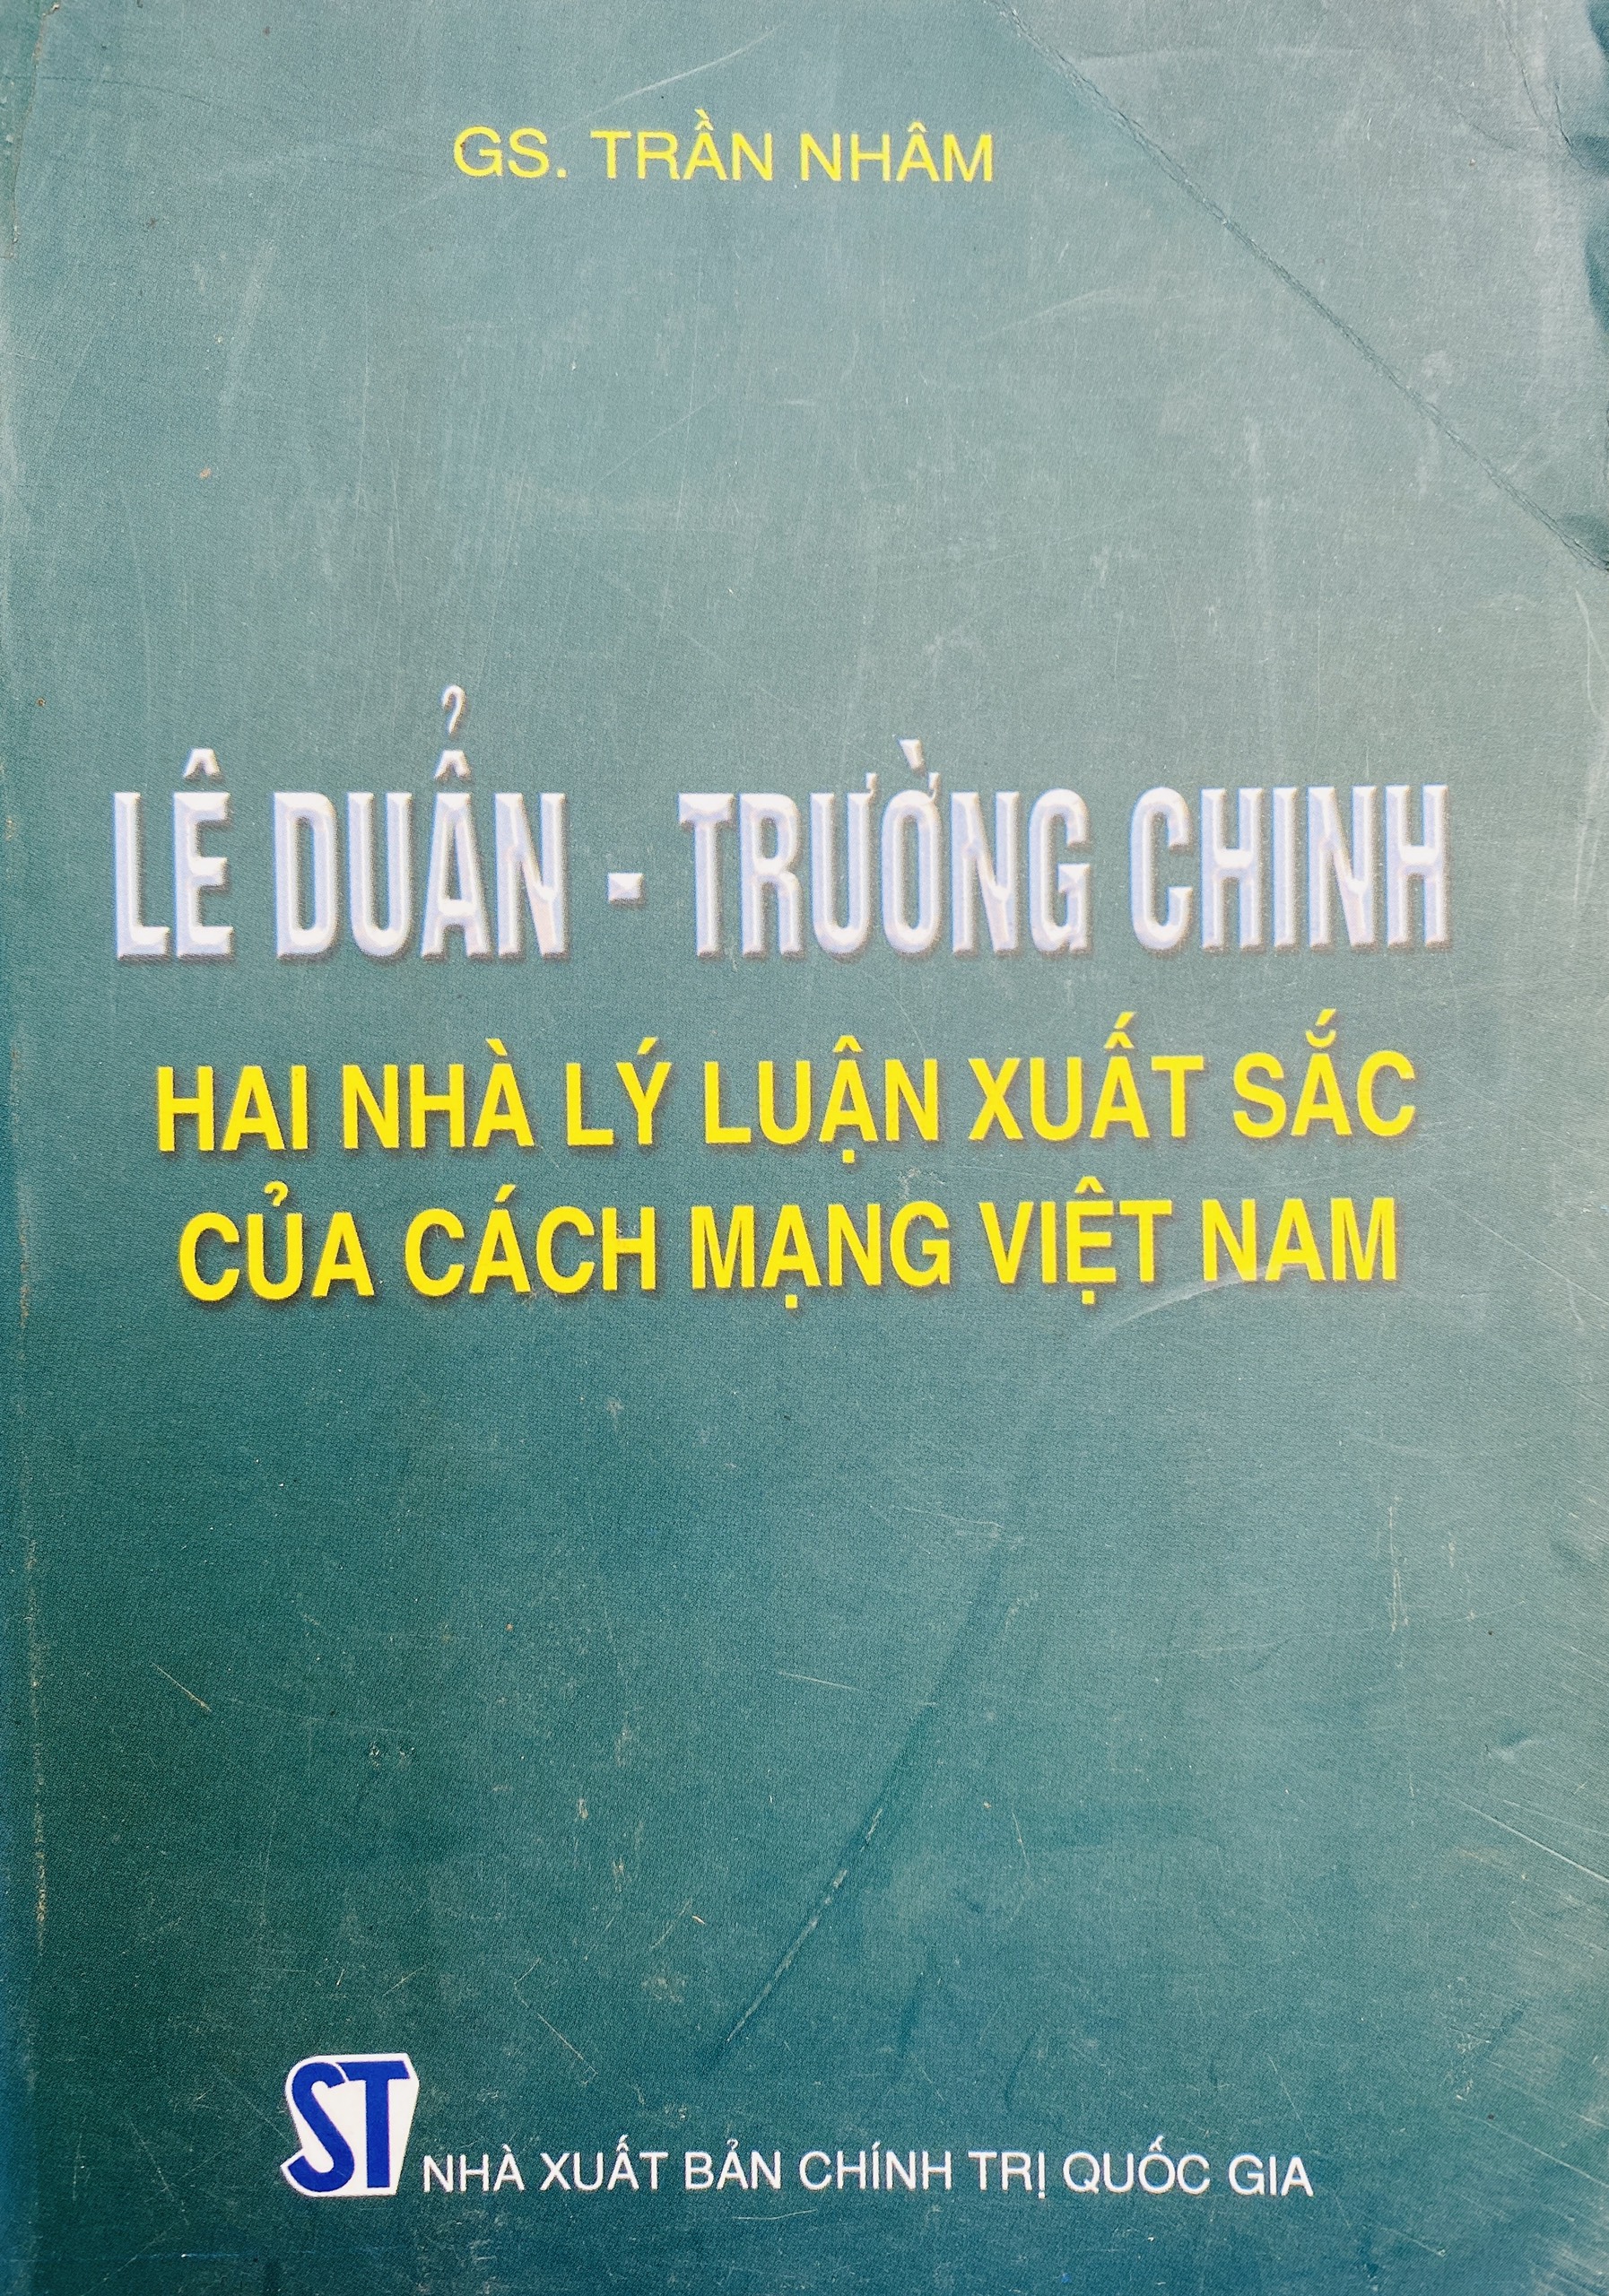 Lê Duẫn – Trường Chinh – Hai nhà lý luận xuất sắc của cách mạng Việt Nam